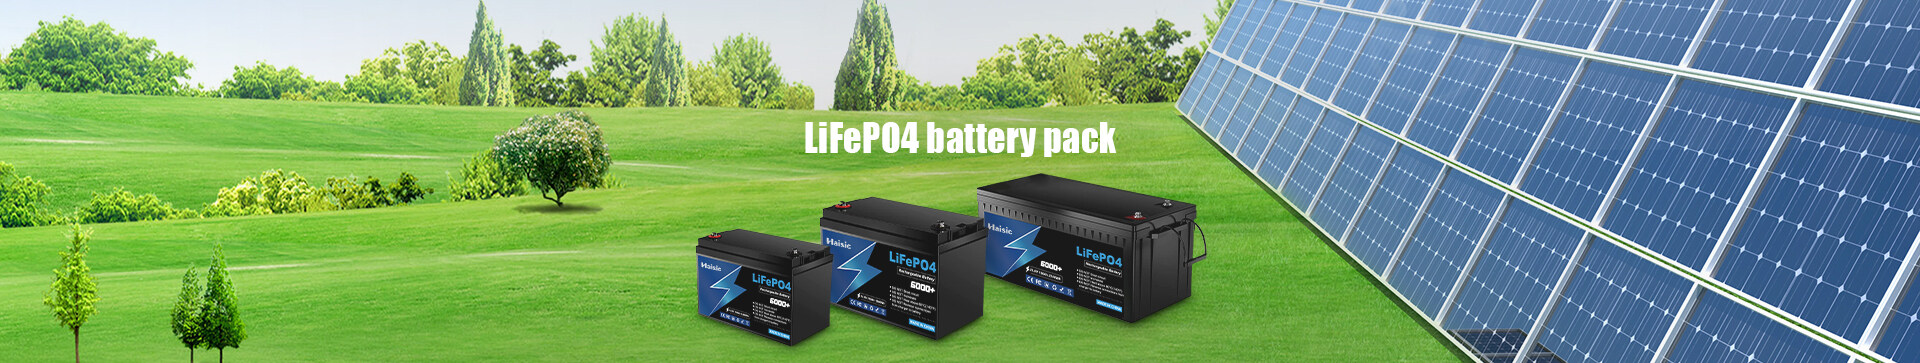 RV Battery,48V 200ah lifepo4 battery,lifepo4 battery